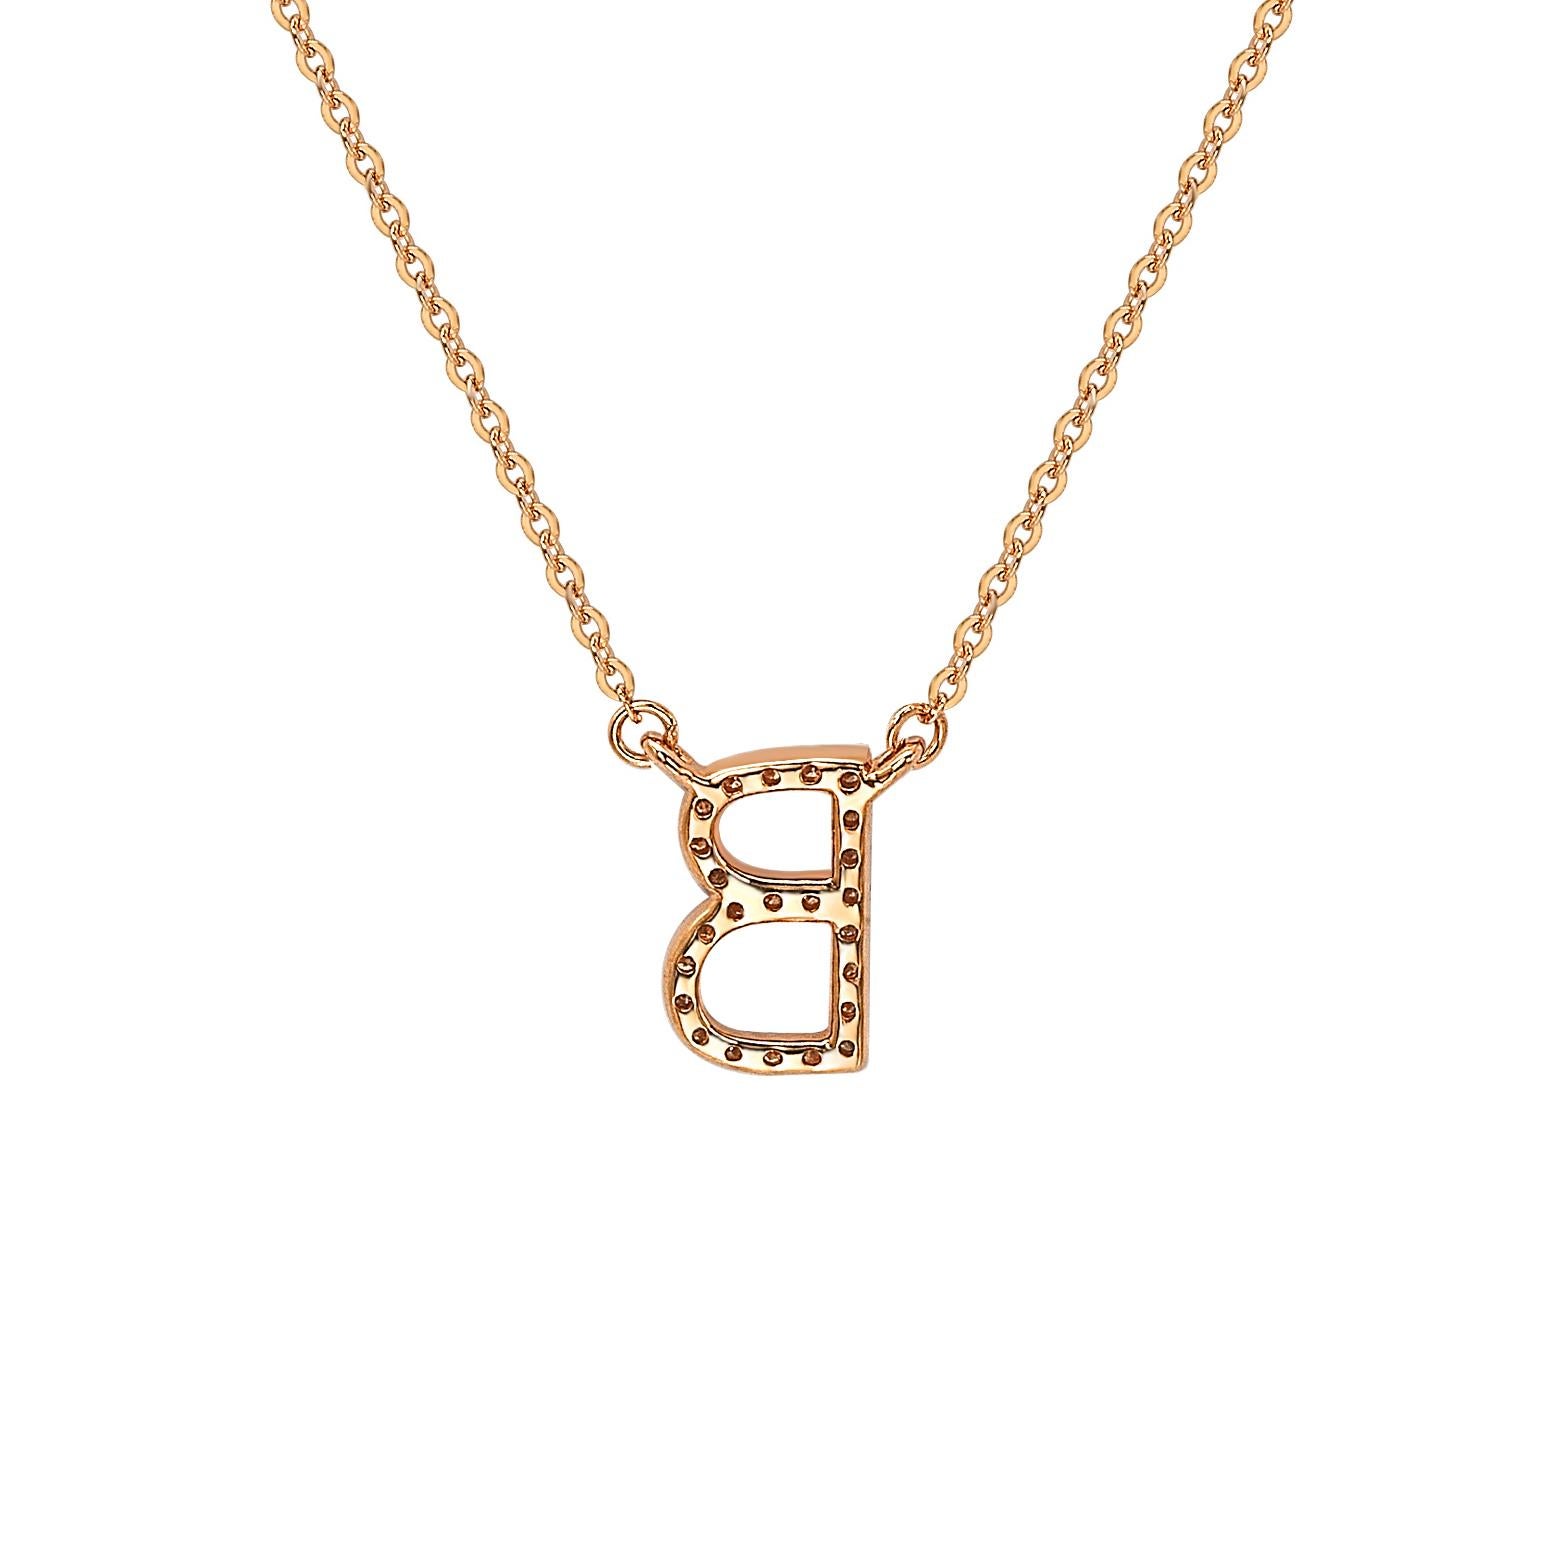 Diese atemberaubende, personalisierte Suzy Levian Buchstabenkette besteht aus natürlichen Diamanten, die von Hand in 14-karätiges Roségold gefasst wurden. Es ist das perfekte individuelle Geschenk, um jemandem mitzuteilen, dass man an ihn oder sie